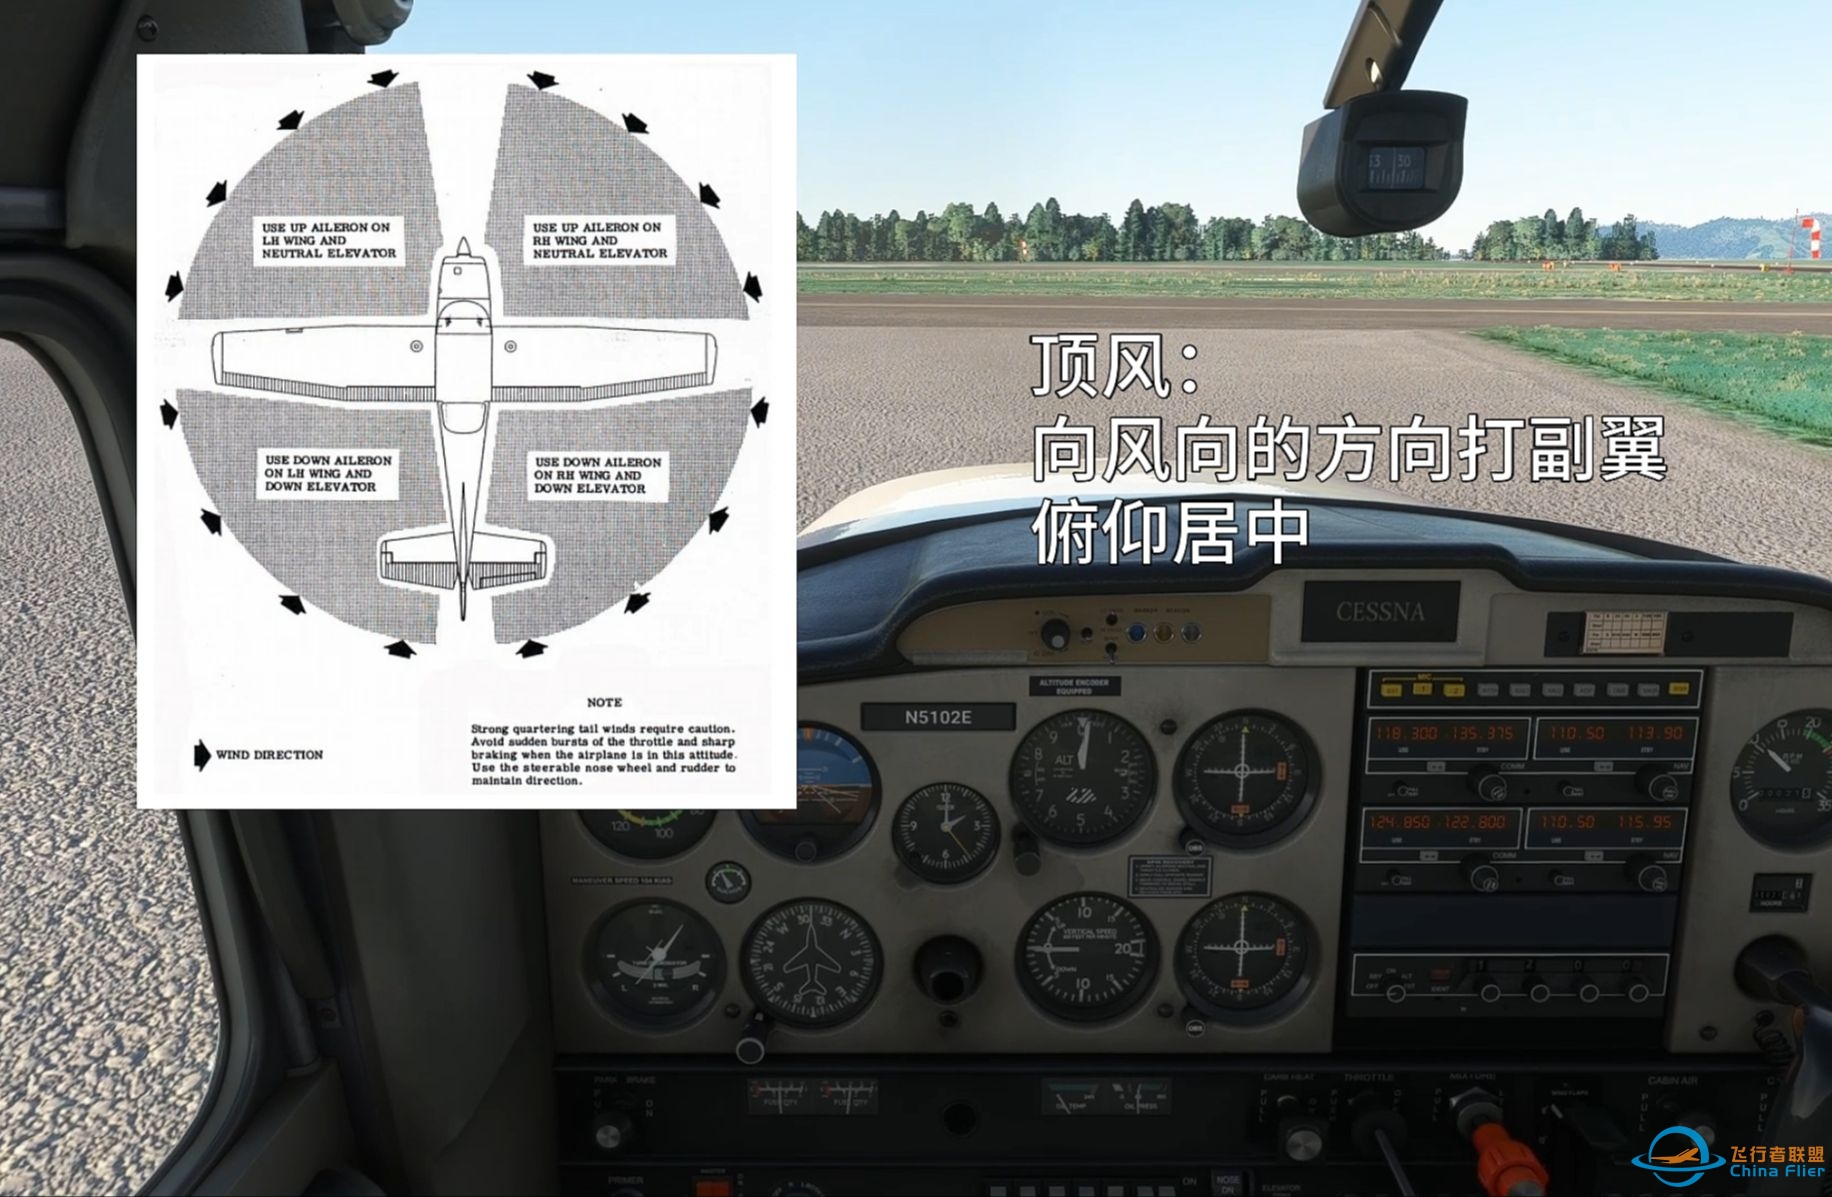 起飞和降落基础 - 让飞行模拟更有仪式感 - 冷舱启动与地面滑行-3710 